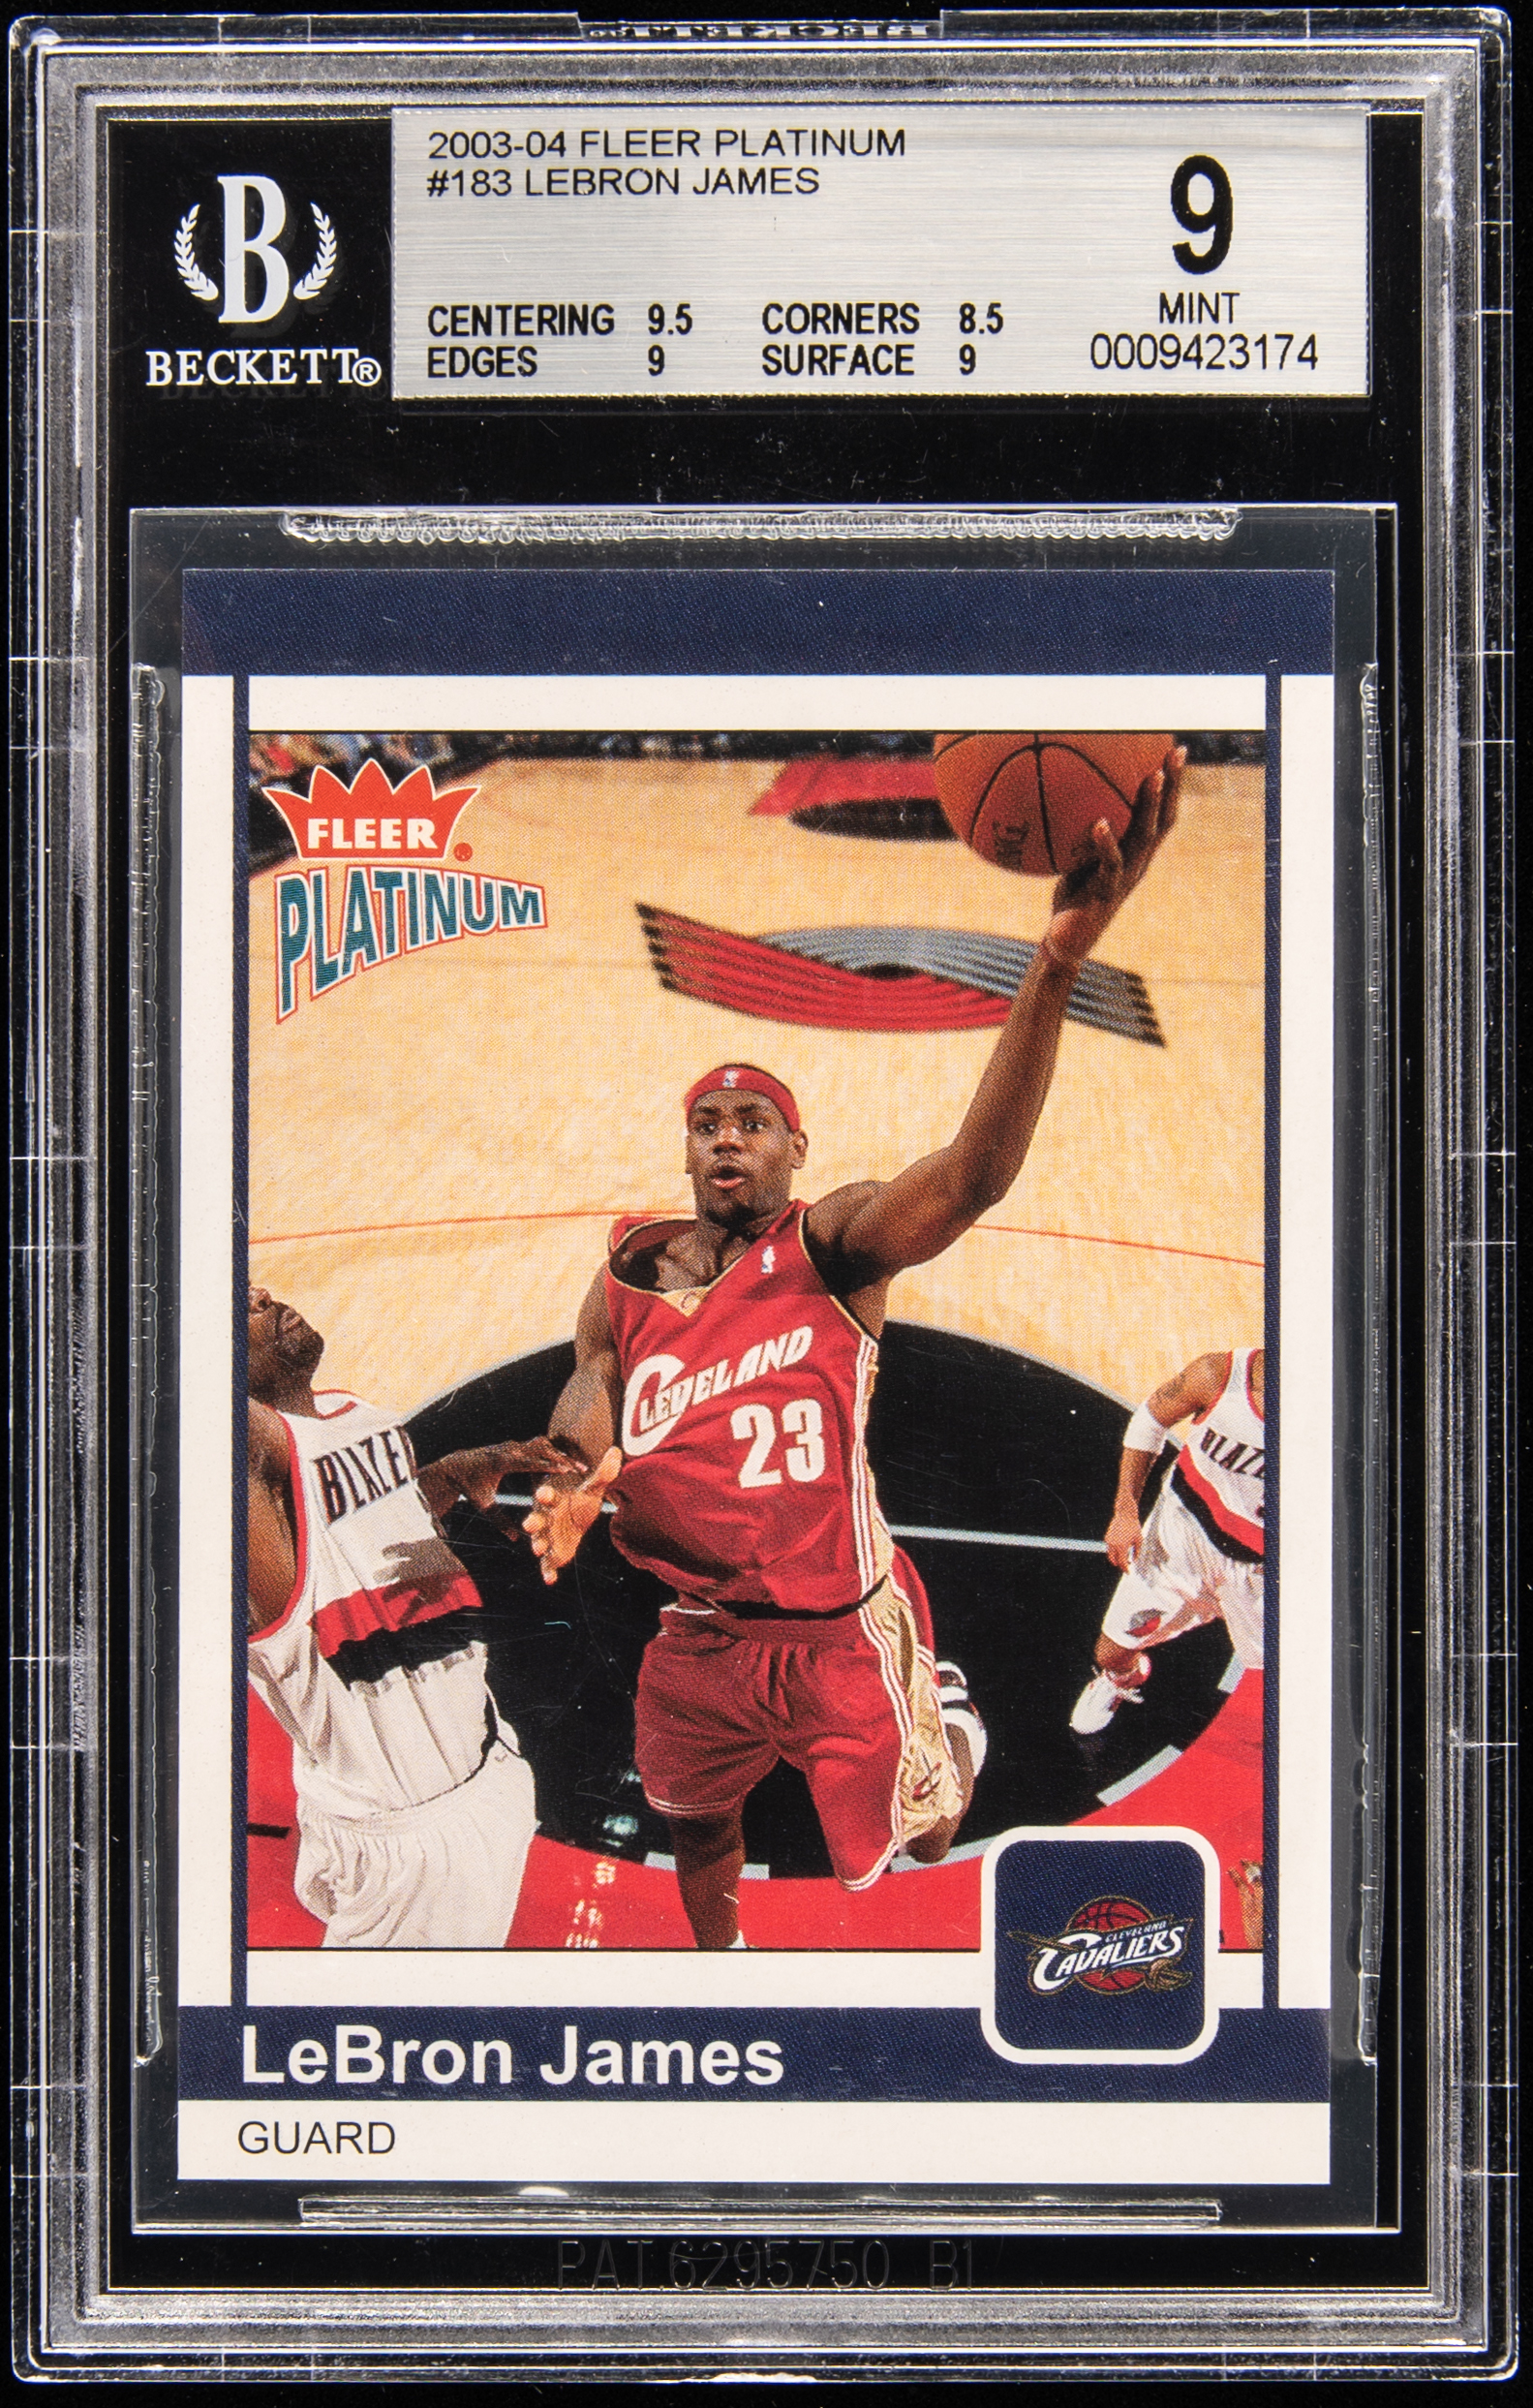 2003-04 Fleer Platinum #183 LeBron James Rookie Card (#489/750) – BGS MINT 9